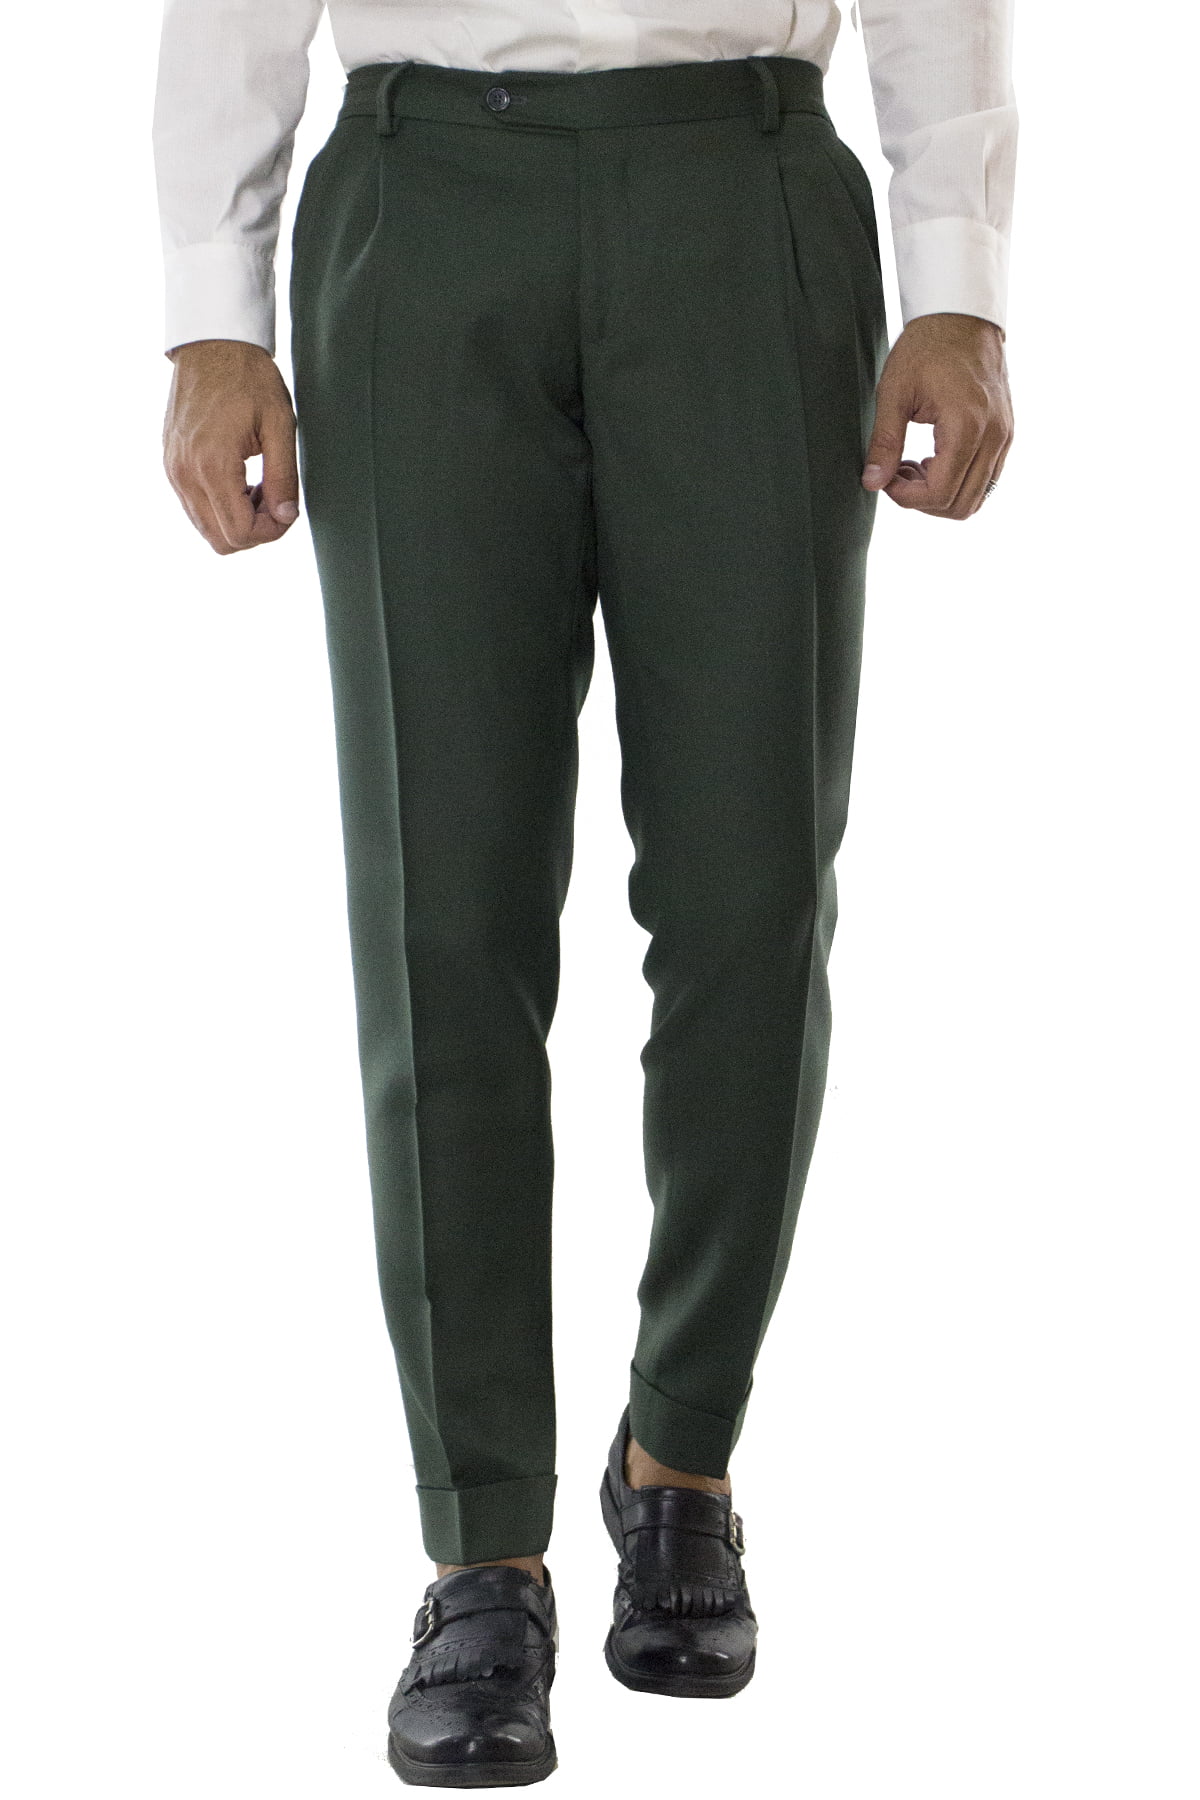 Pantalone uomo militare in lana con doppia pinces e risvolto 4cm